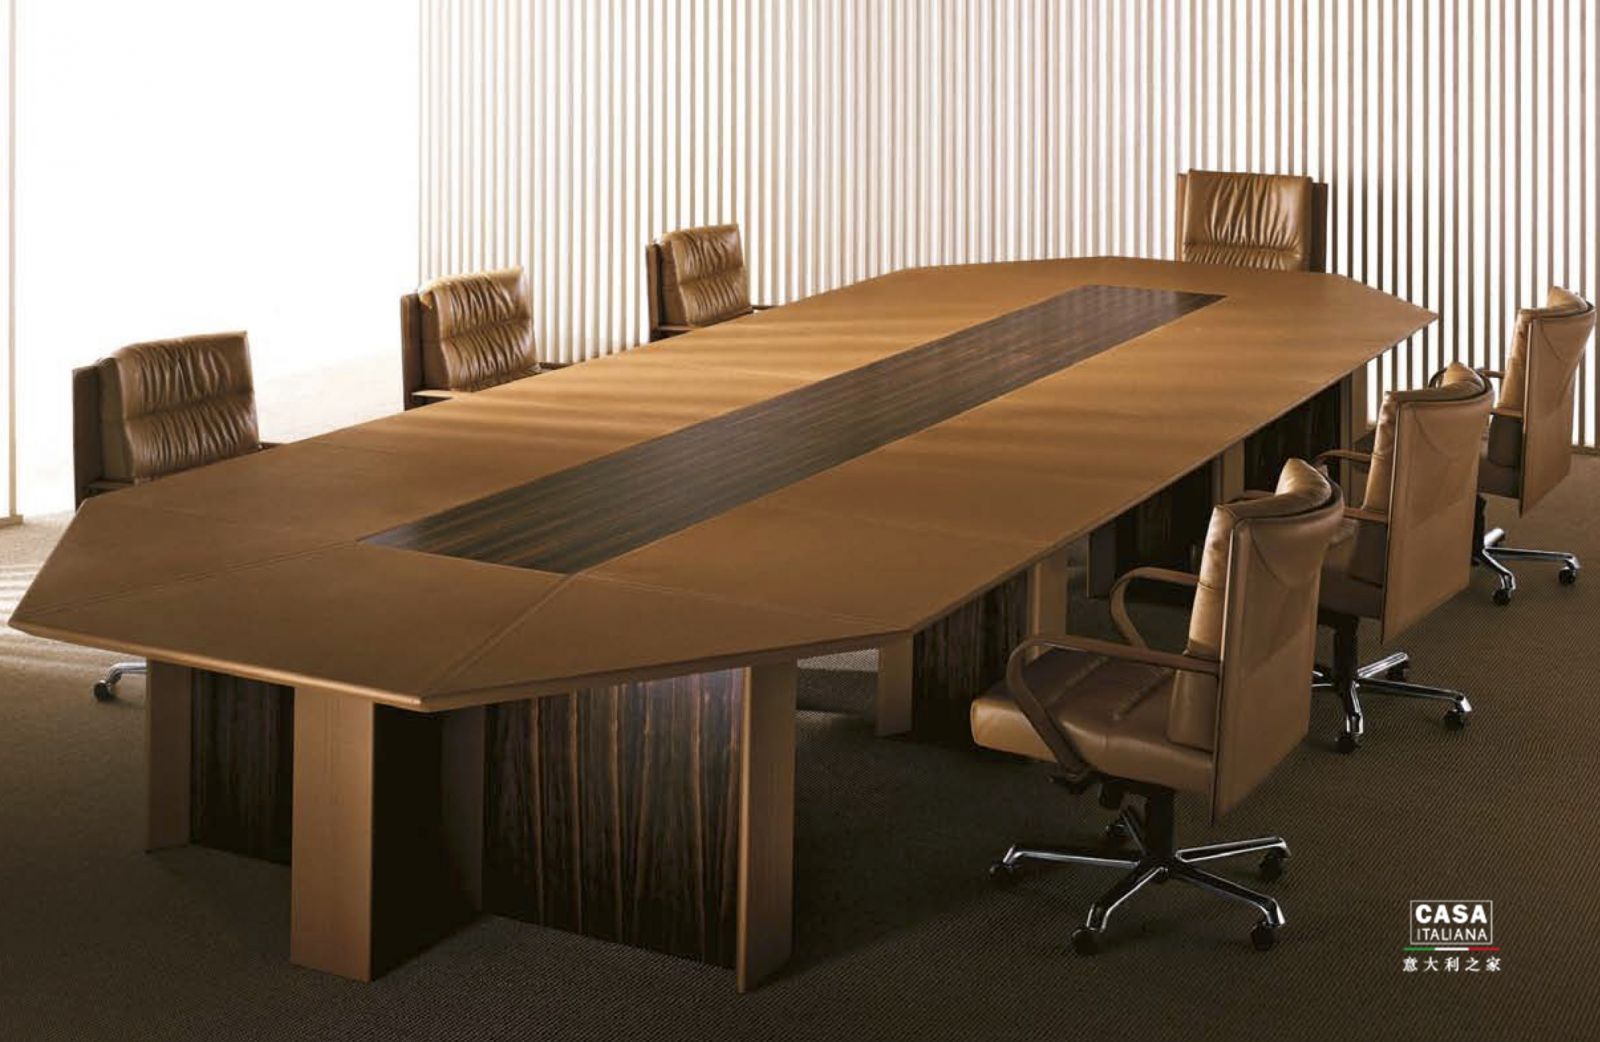 米乐M6意大利波尔托那•弗劳 Roberto Lazzeroni 实木大餐桌餐椅组合 会议桌 简约时尚办公桌(图1)